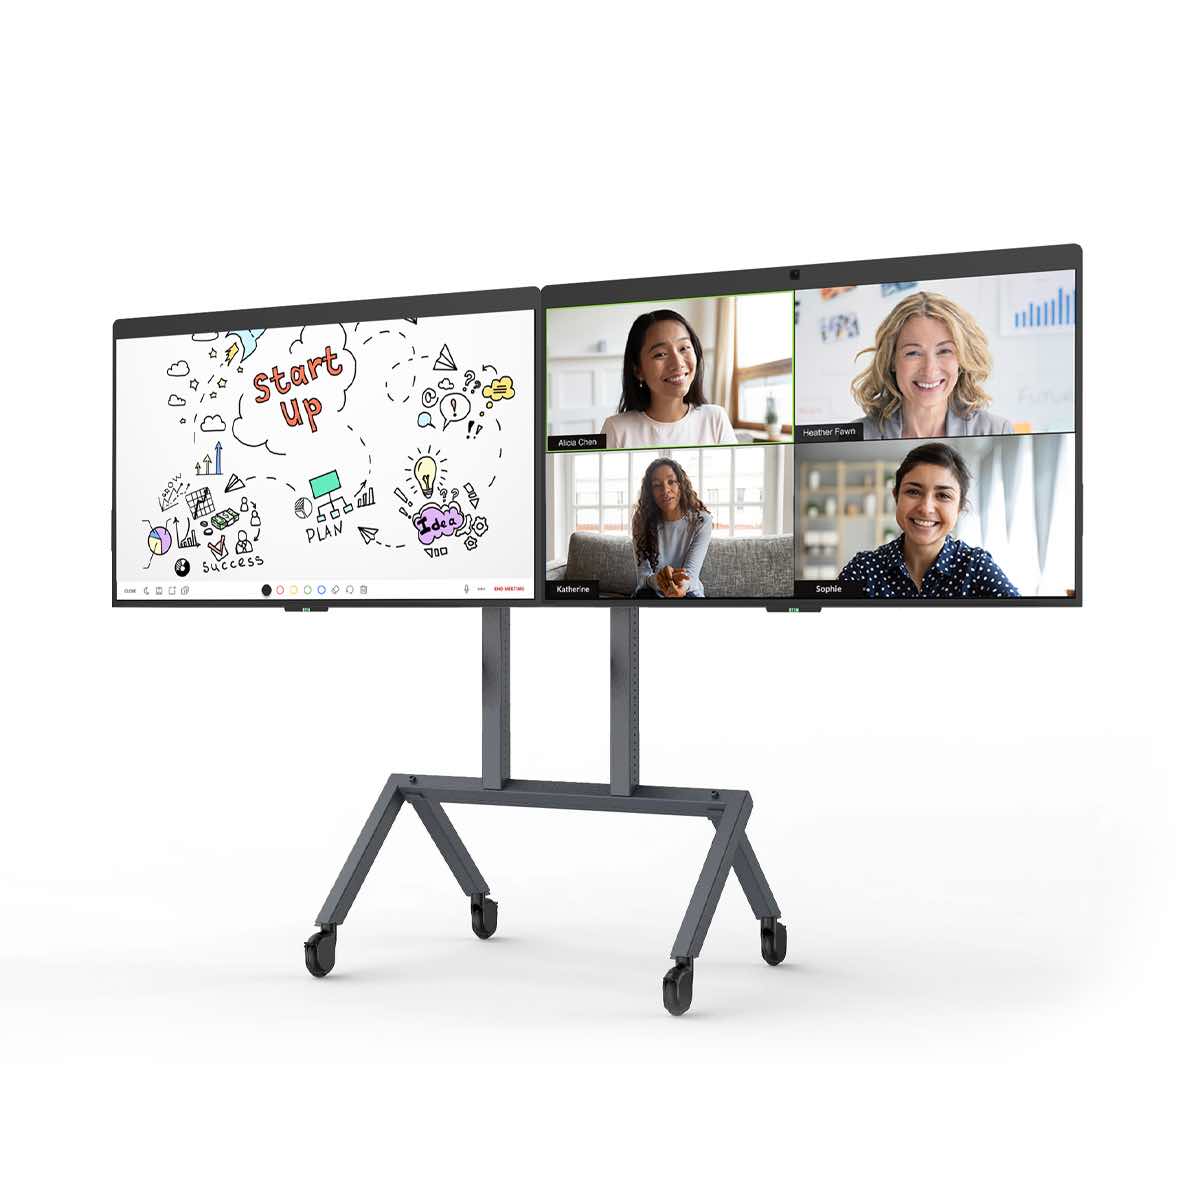 DTEN D7 interaktives Whiteboard mit dual Display in 55 Zoll (1,4 m), mit mobilem Geräteständer